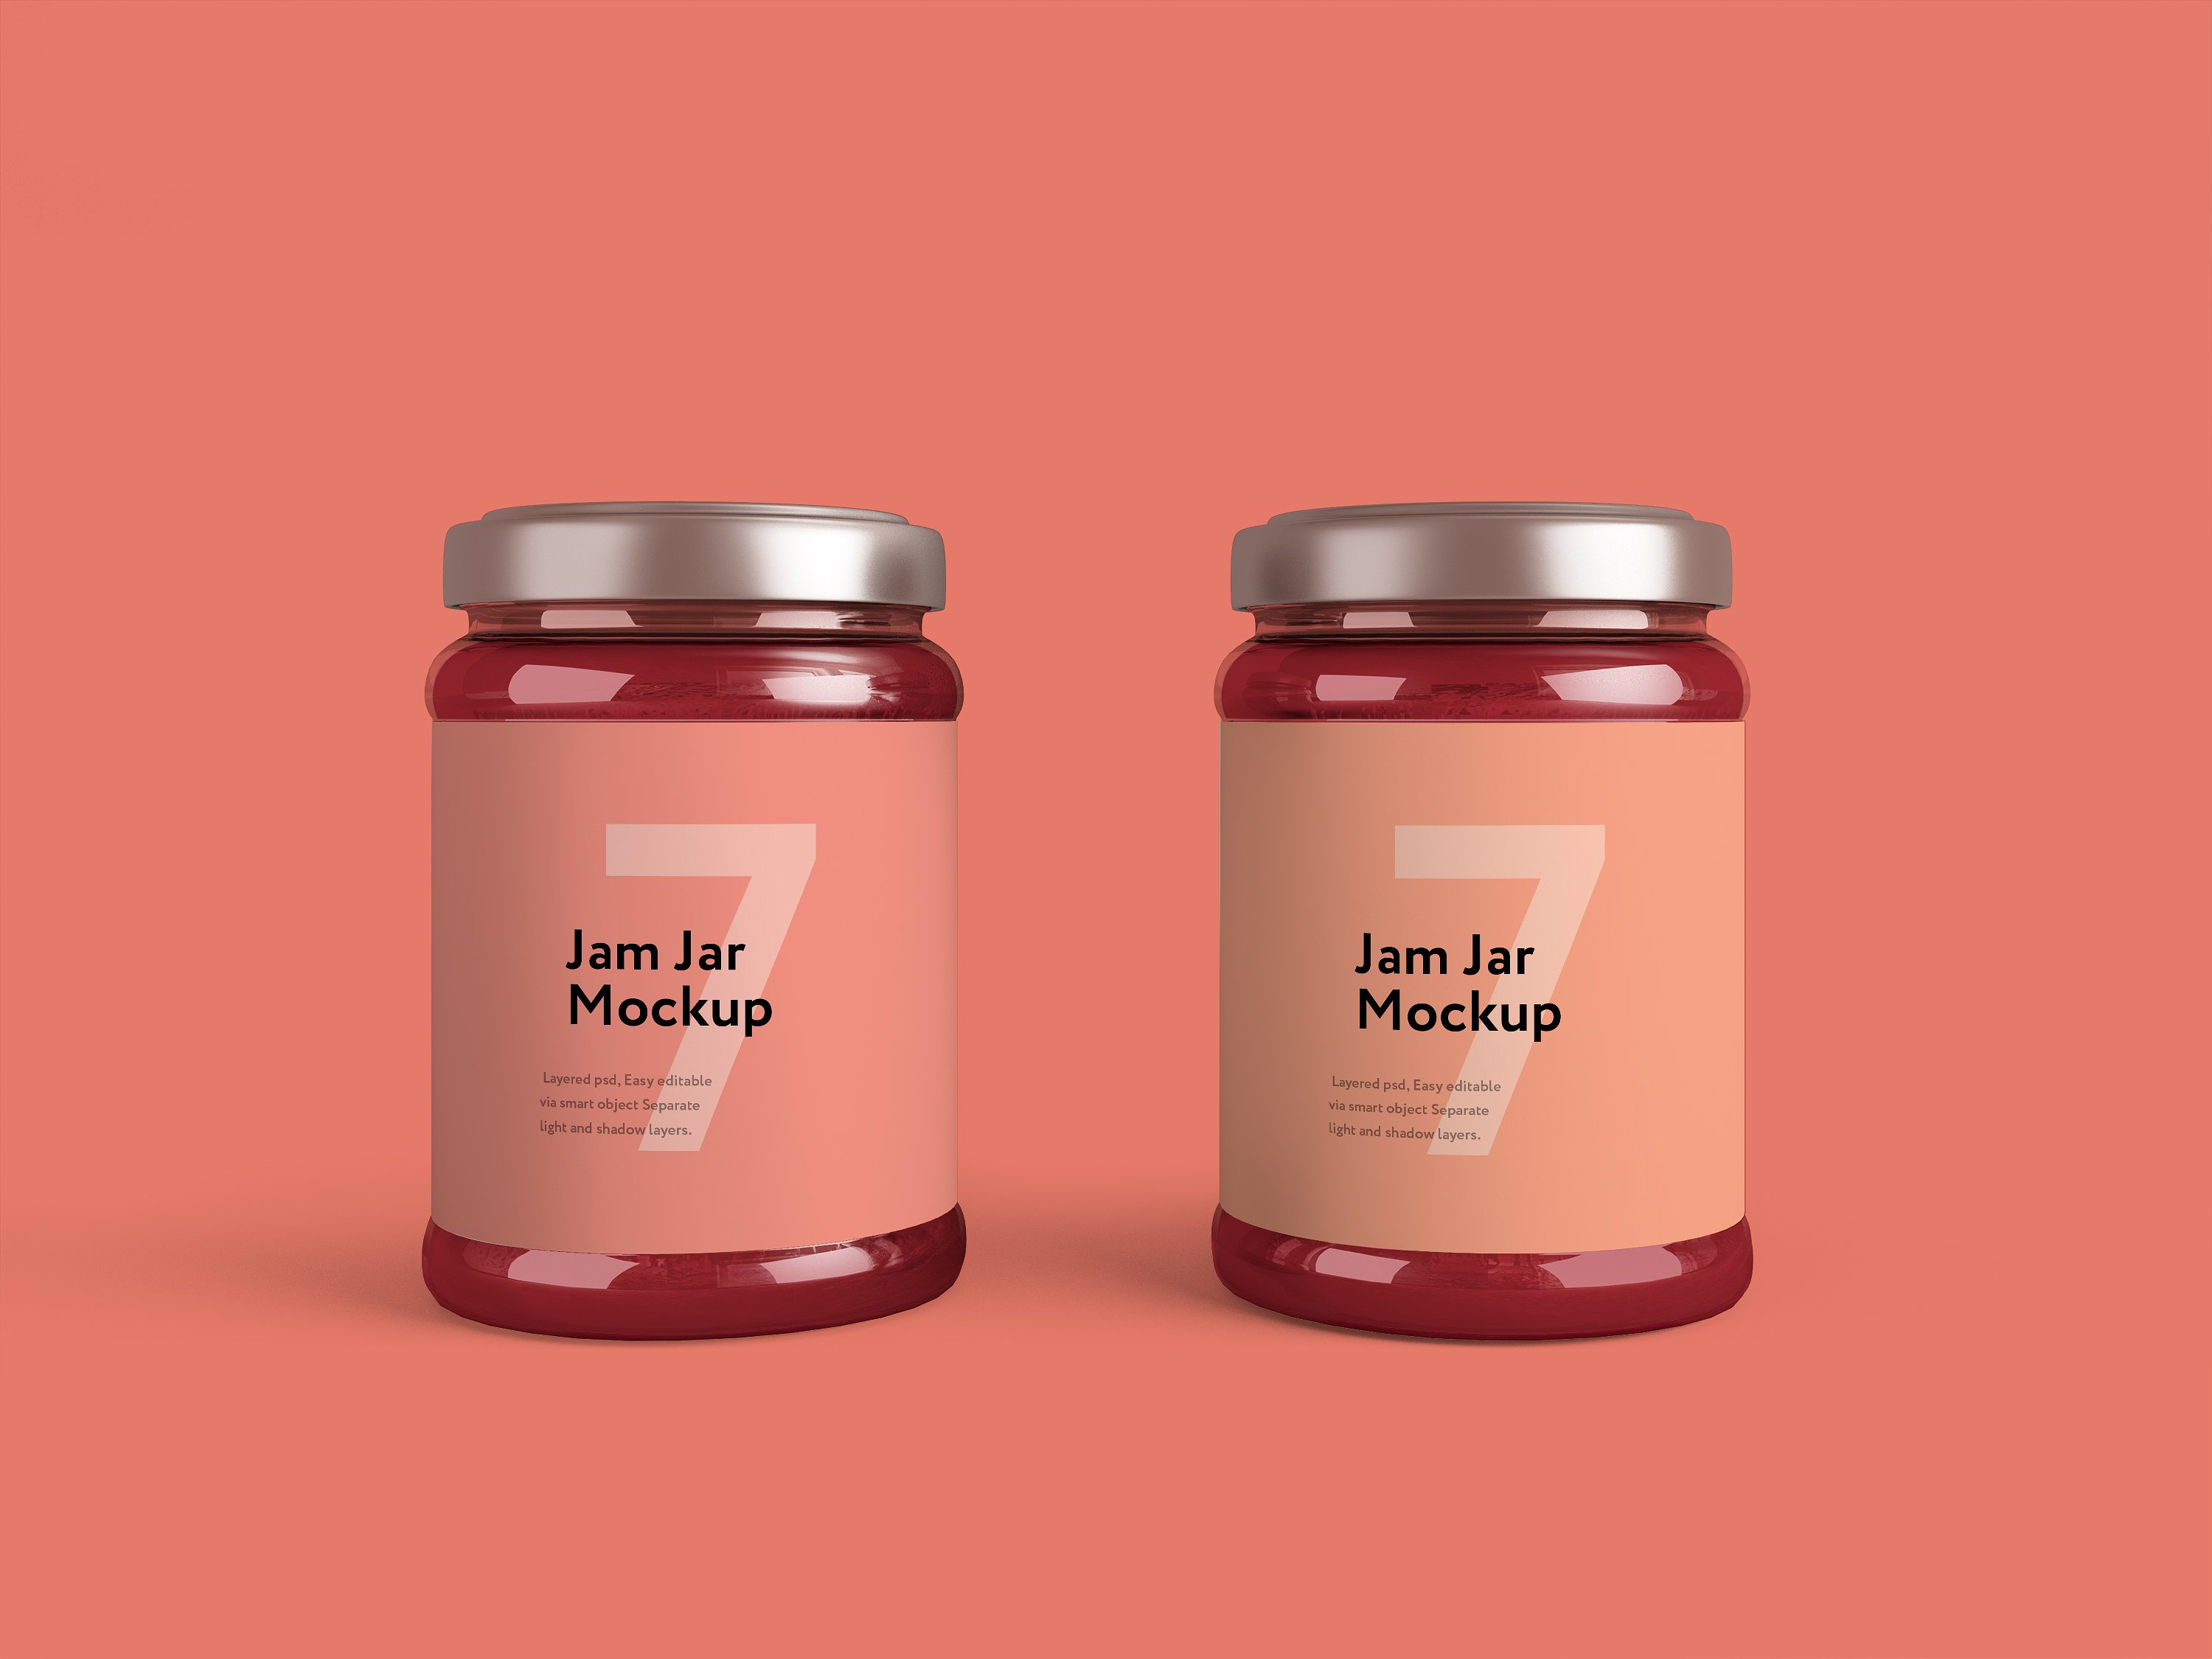 果酱罐子包装设计样机贴图展示PSD模版 Jam Jar Mo